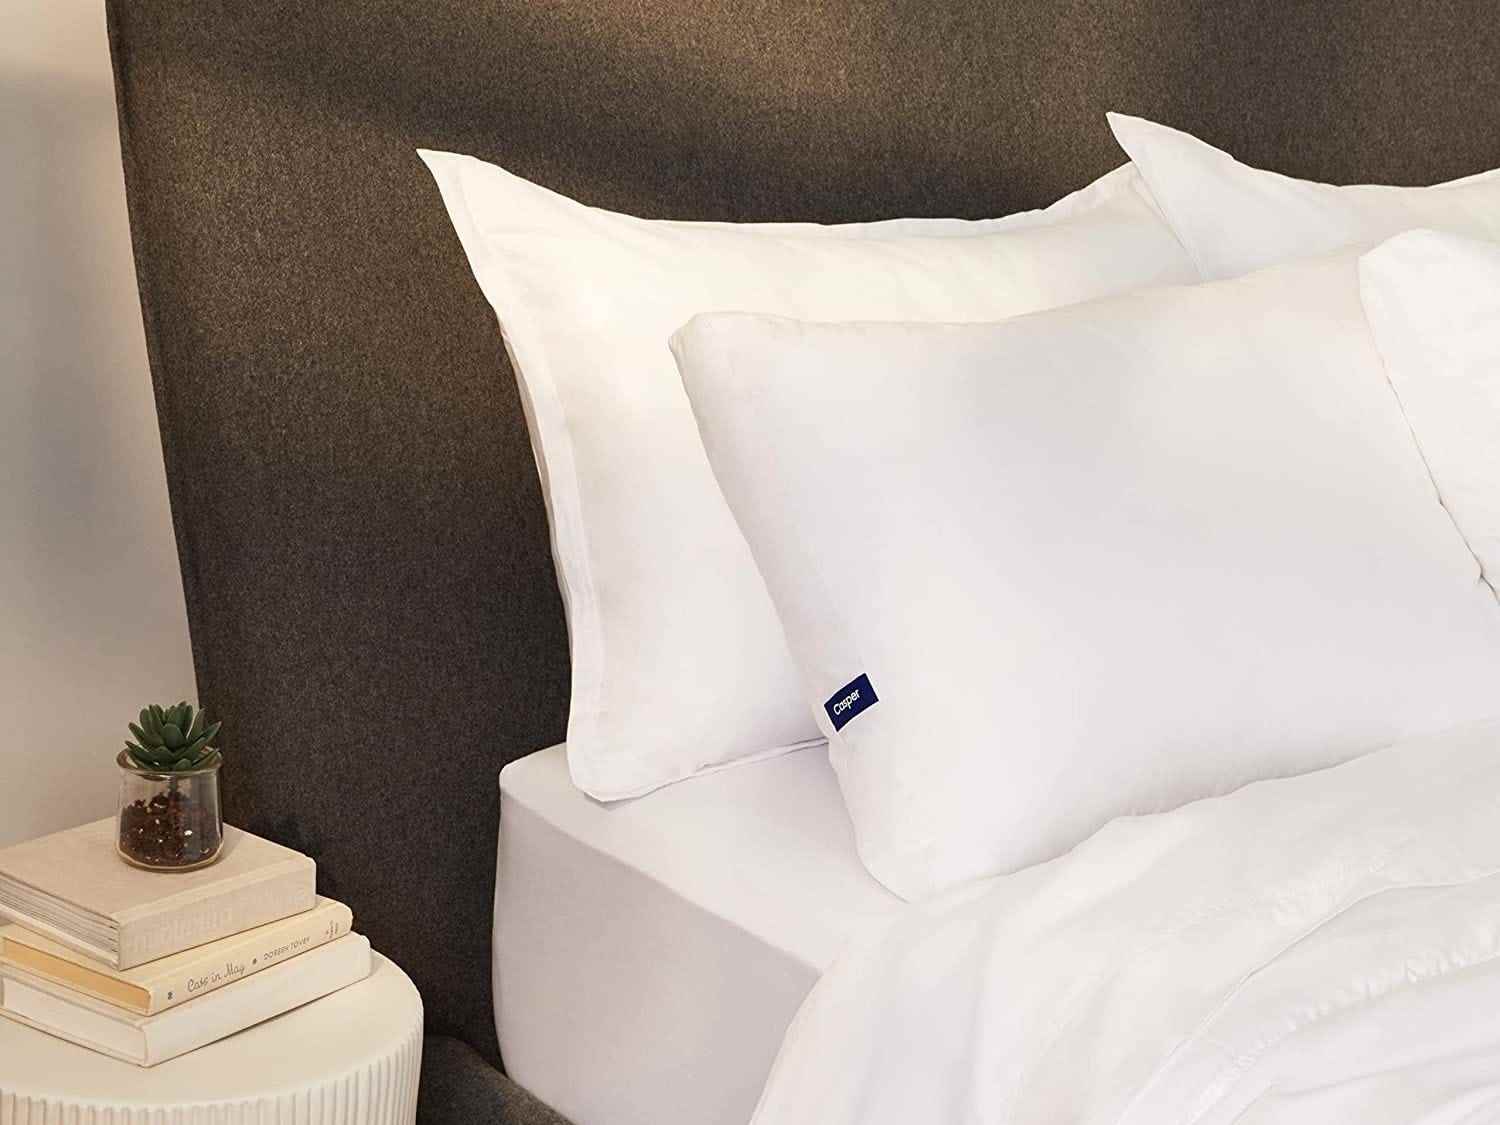 Das Casper Sleep Essential Pillow wird auf einem Bett ausgestellt.